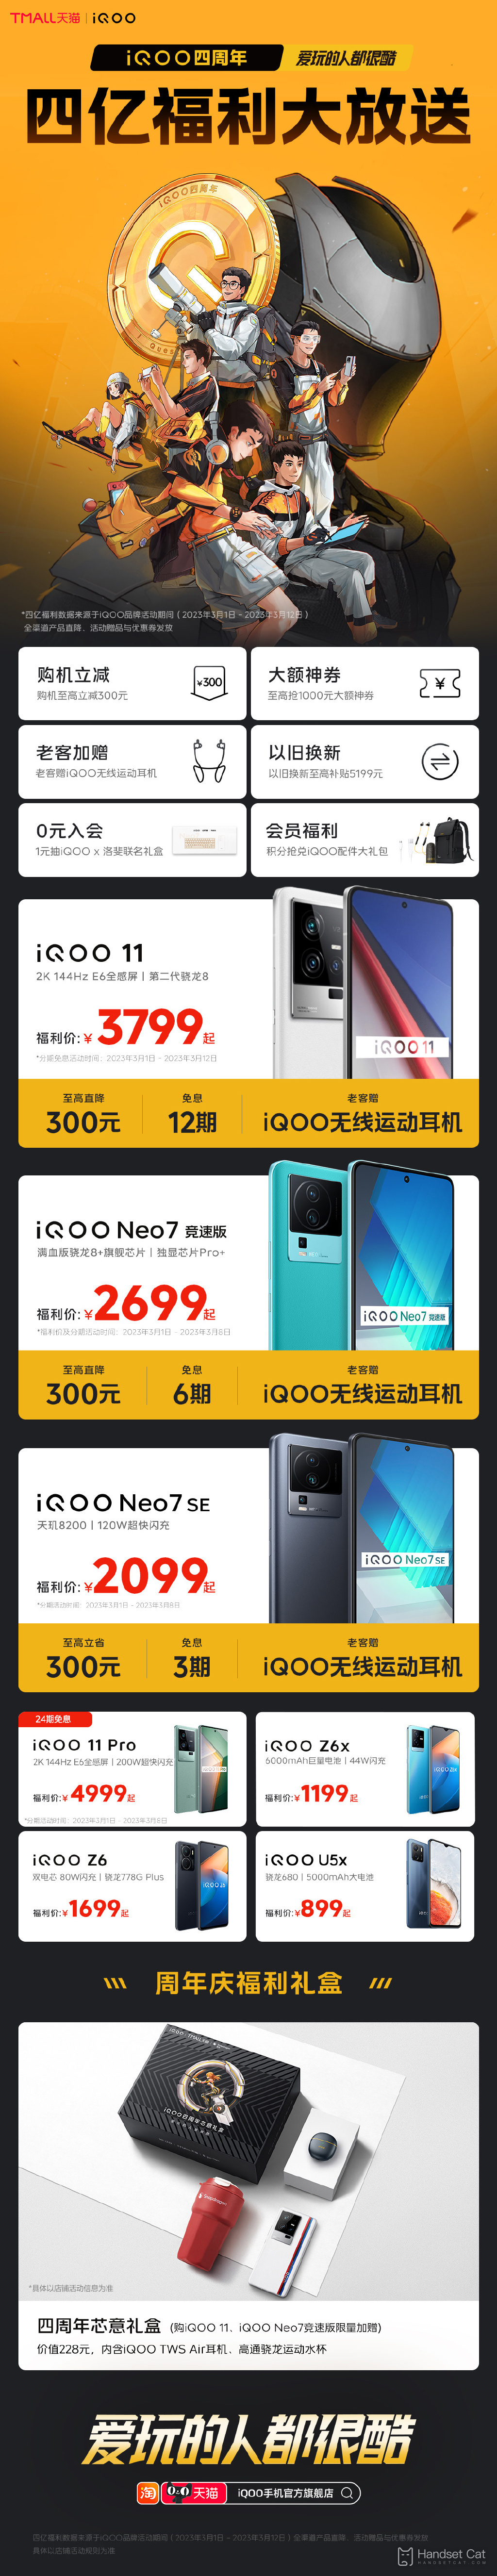 iQOO अपनी चौथी वर्षगांठ पर iQOO 11 और अन्य मॉडलों पर 300 युआन तक की छूट के साथ लाभ दे रहा है